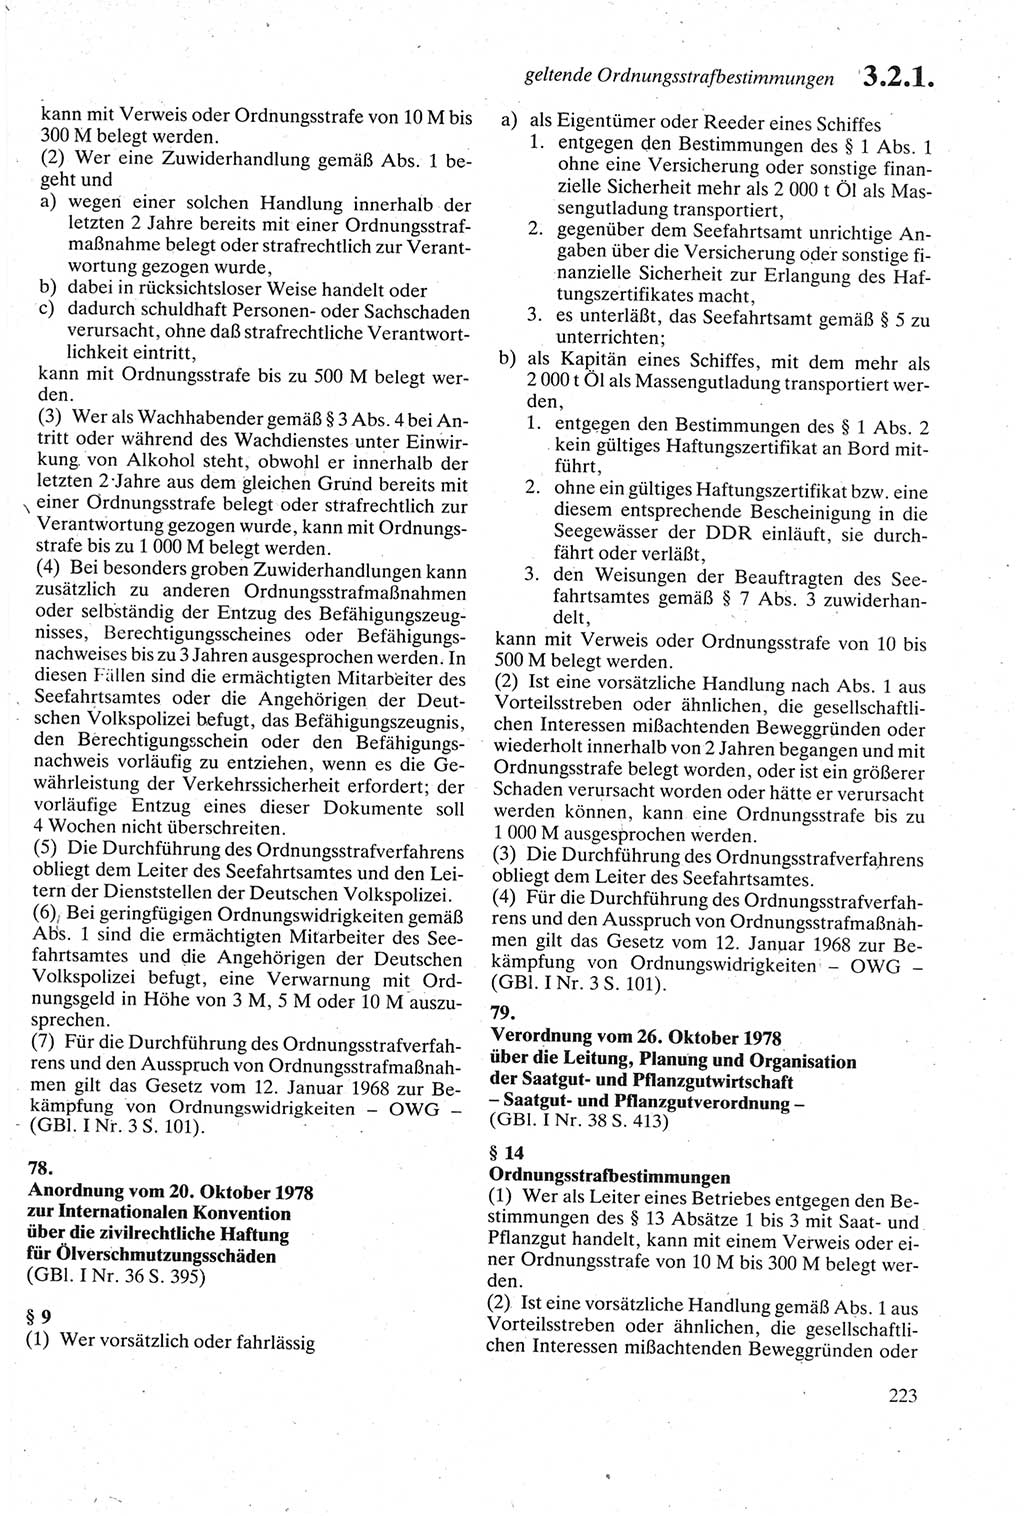 Strafgesetzbuch (StGB) der Deutschen Demokratischen Republik (DDR) sowie angrenzende Gesetze und Bestimmungen 1979, Seite 223 (StGB DDR Ges. Best. 1979, S. 223)